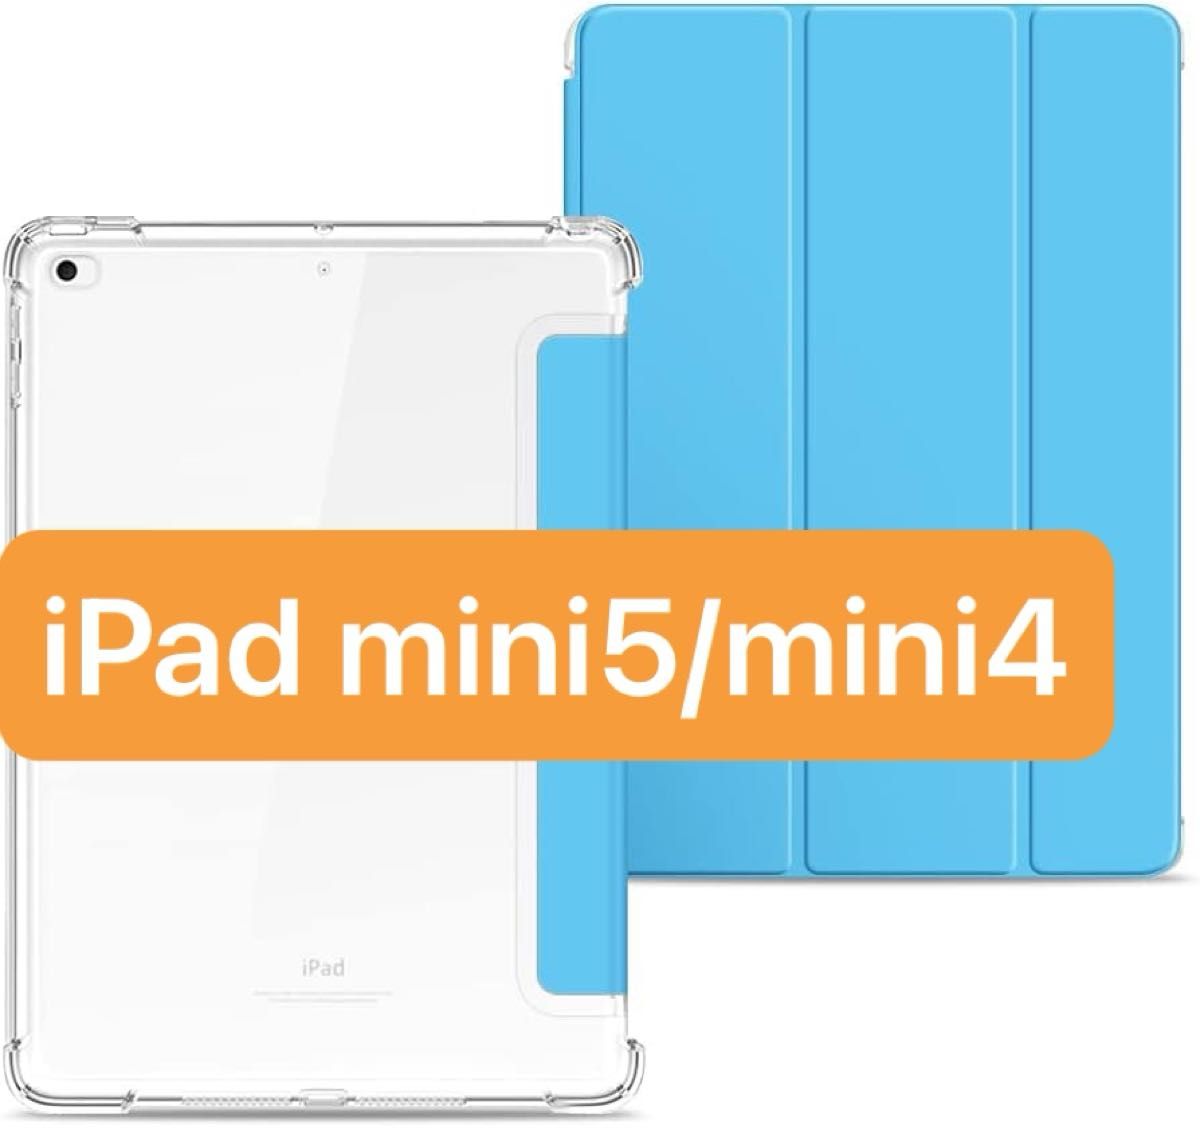  即日発送 匿名発送 iPad mini5/mini4 ケース 透明 超薄型 超軽量ソフトカバー オートスリープ機能 PUレザー